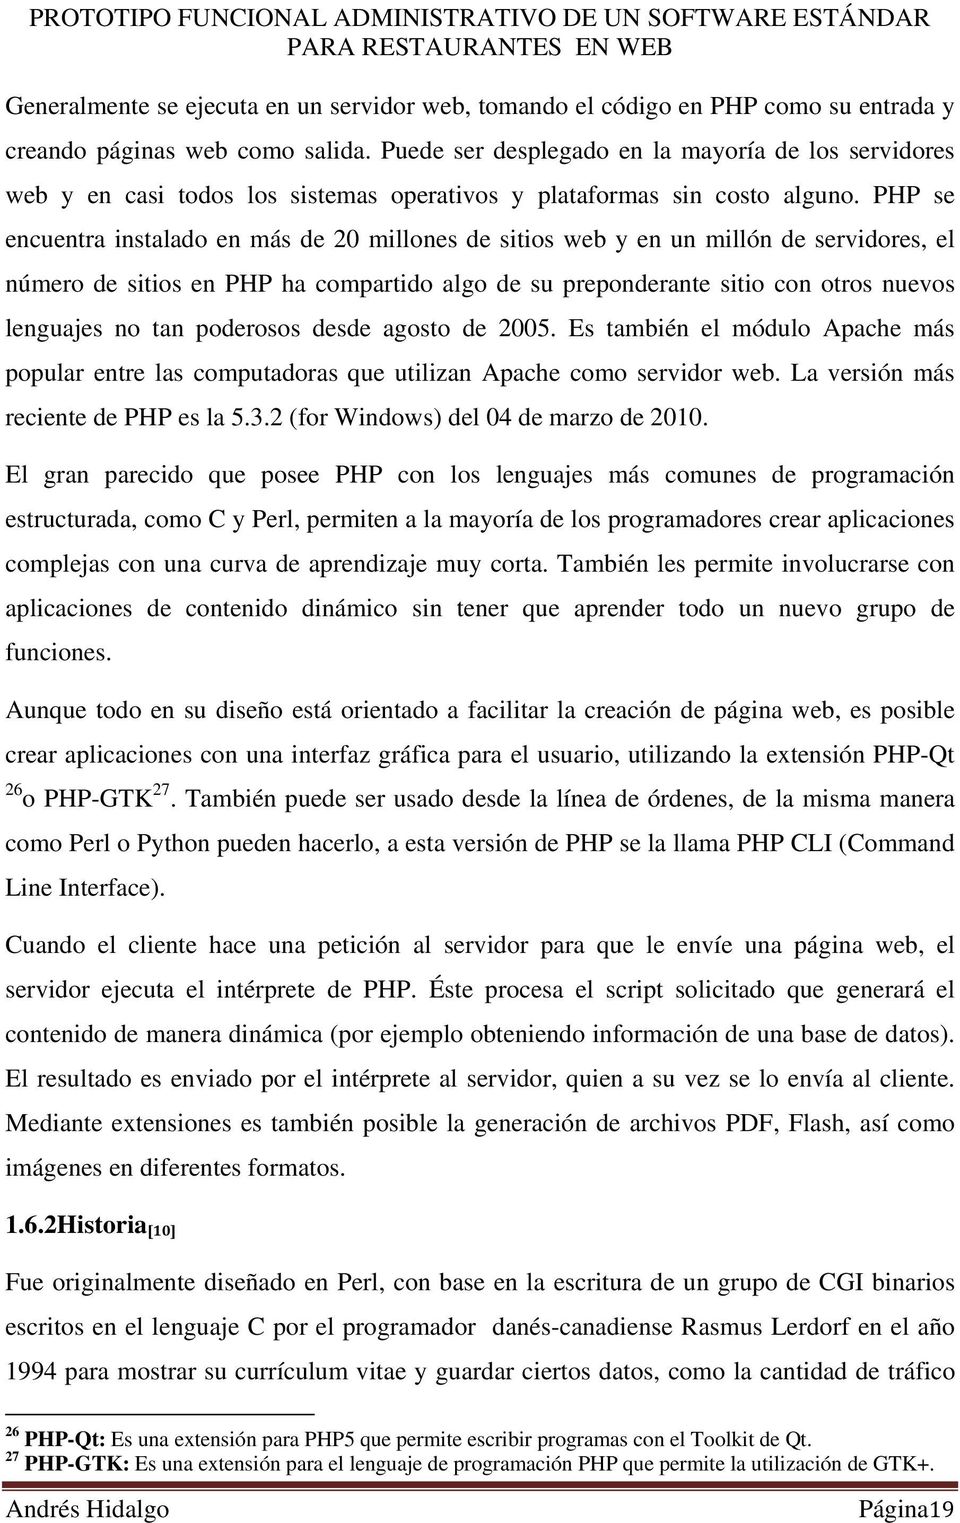 PHP se encuentra instalado en más de 20 millones de sitios web y en un millón de servidores, el número de sitios en PHP ha compartido algo de su preponderante sitio con otros nuevos lenguajes no tan